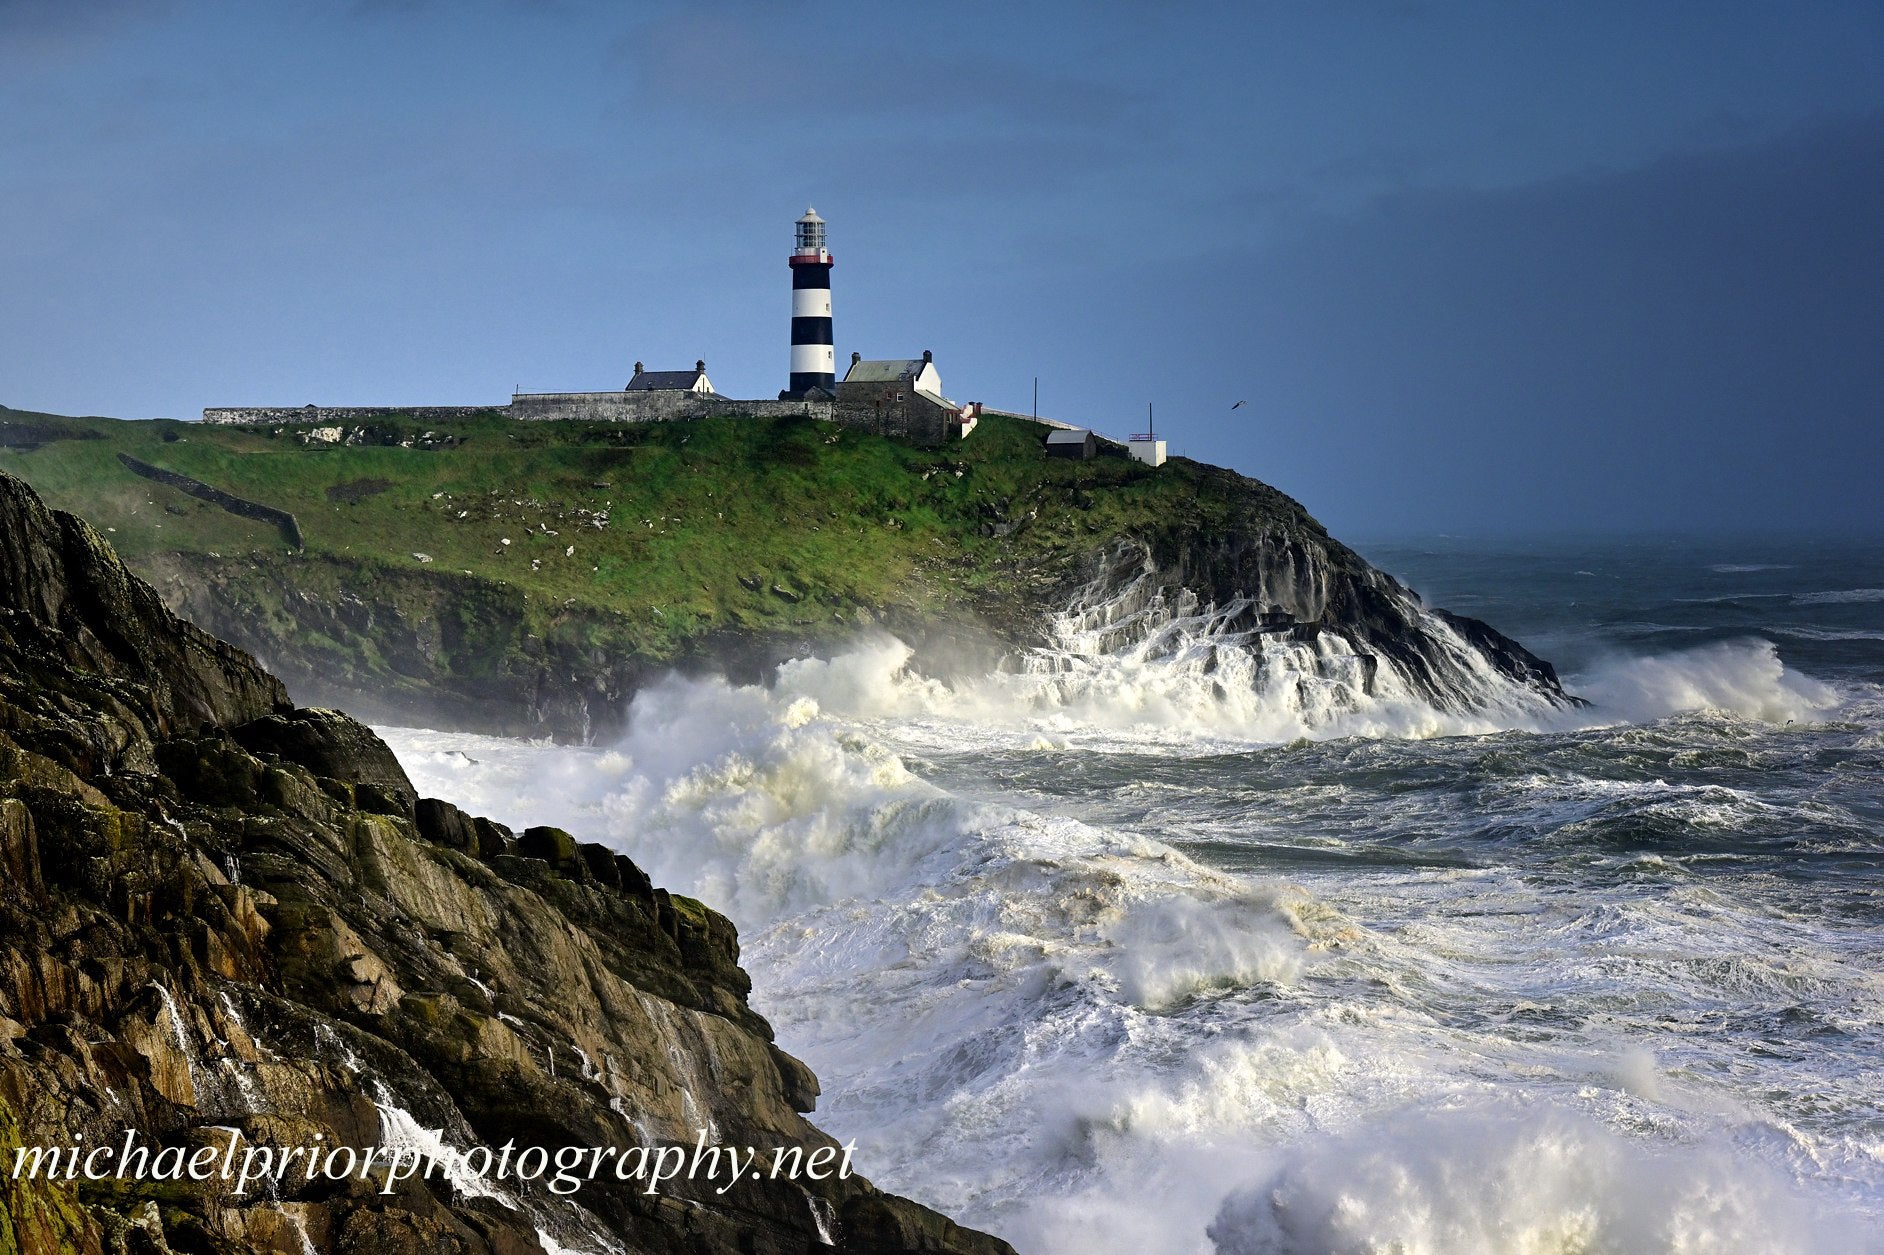 stormy seas at the Oldhead lighthouse near Kinsale Co cork